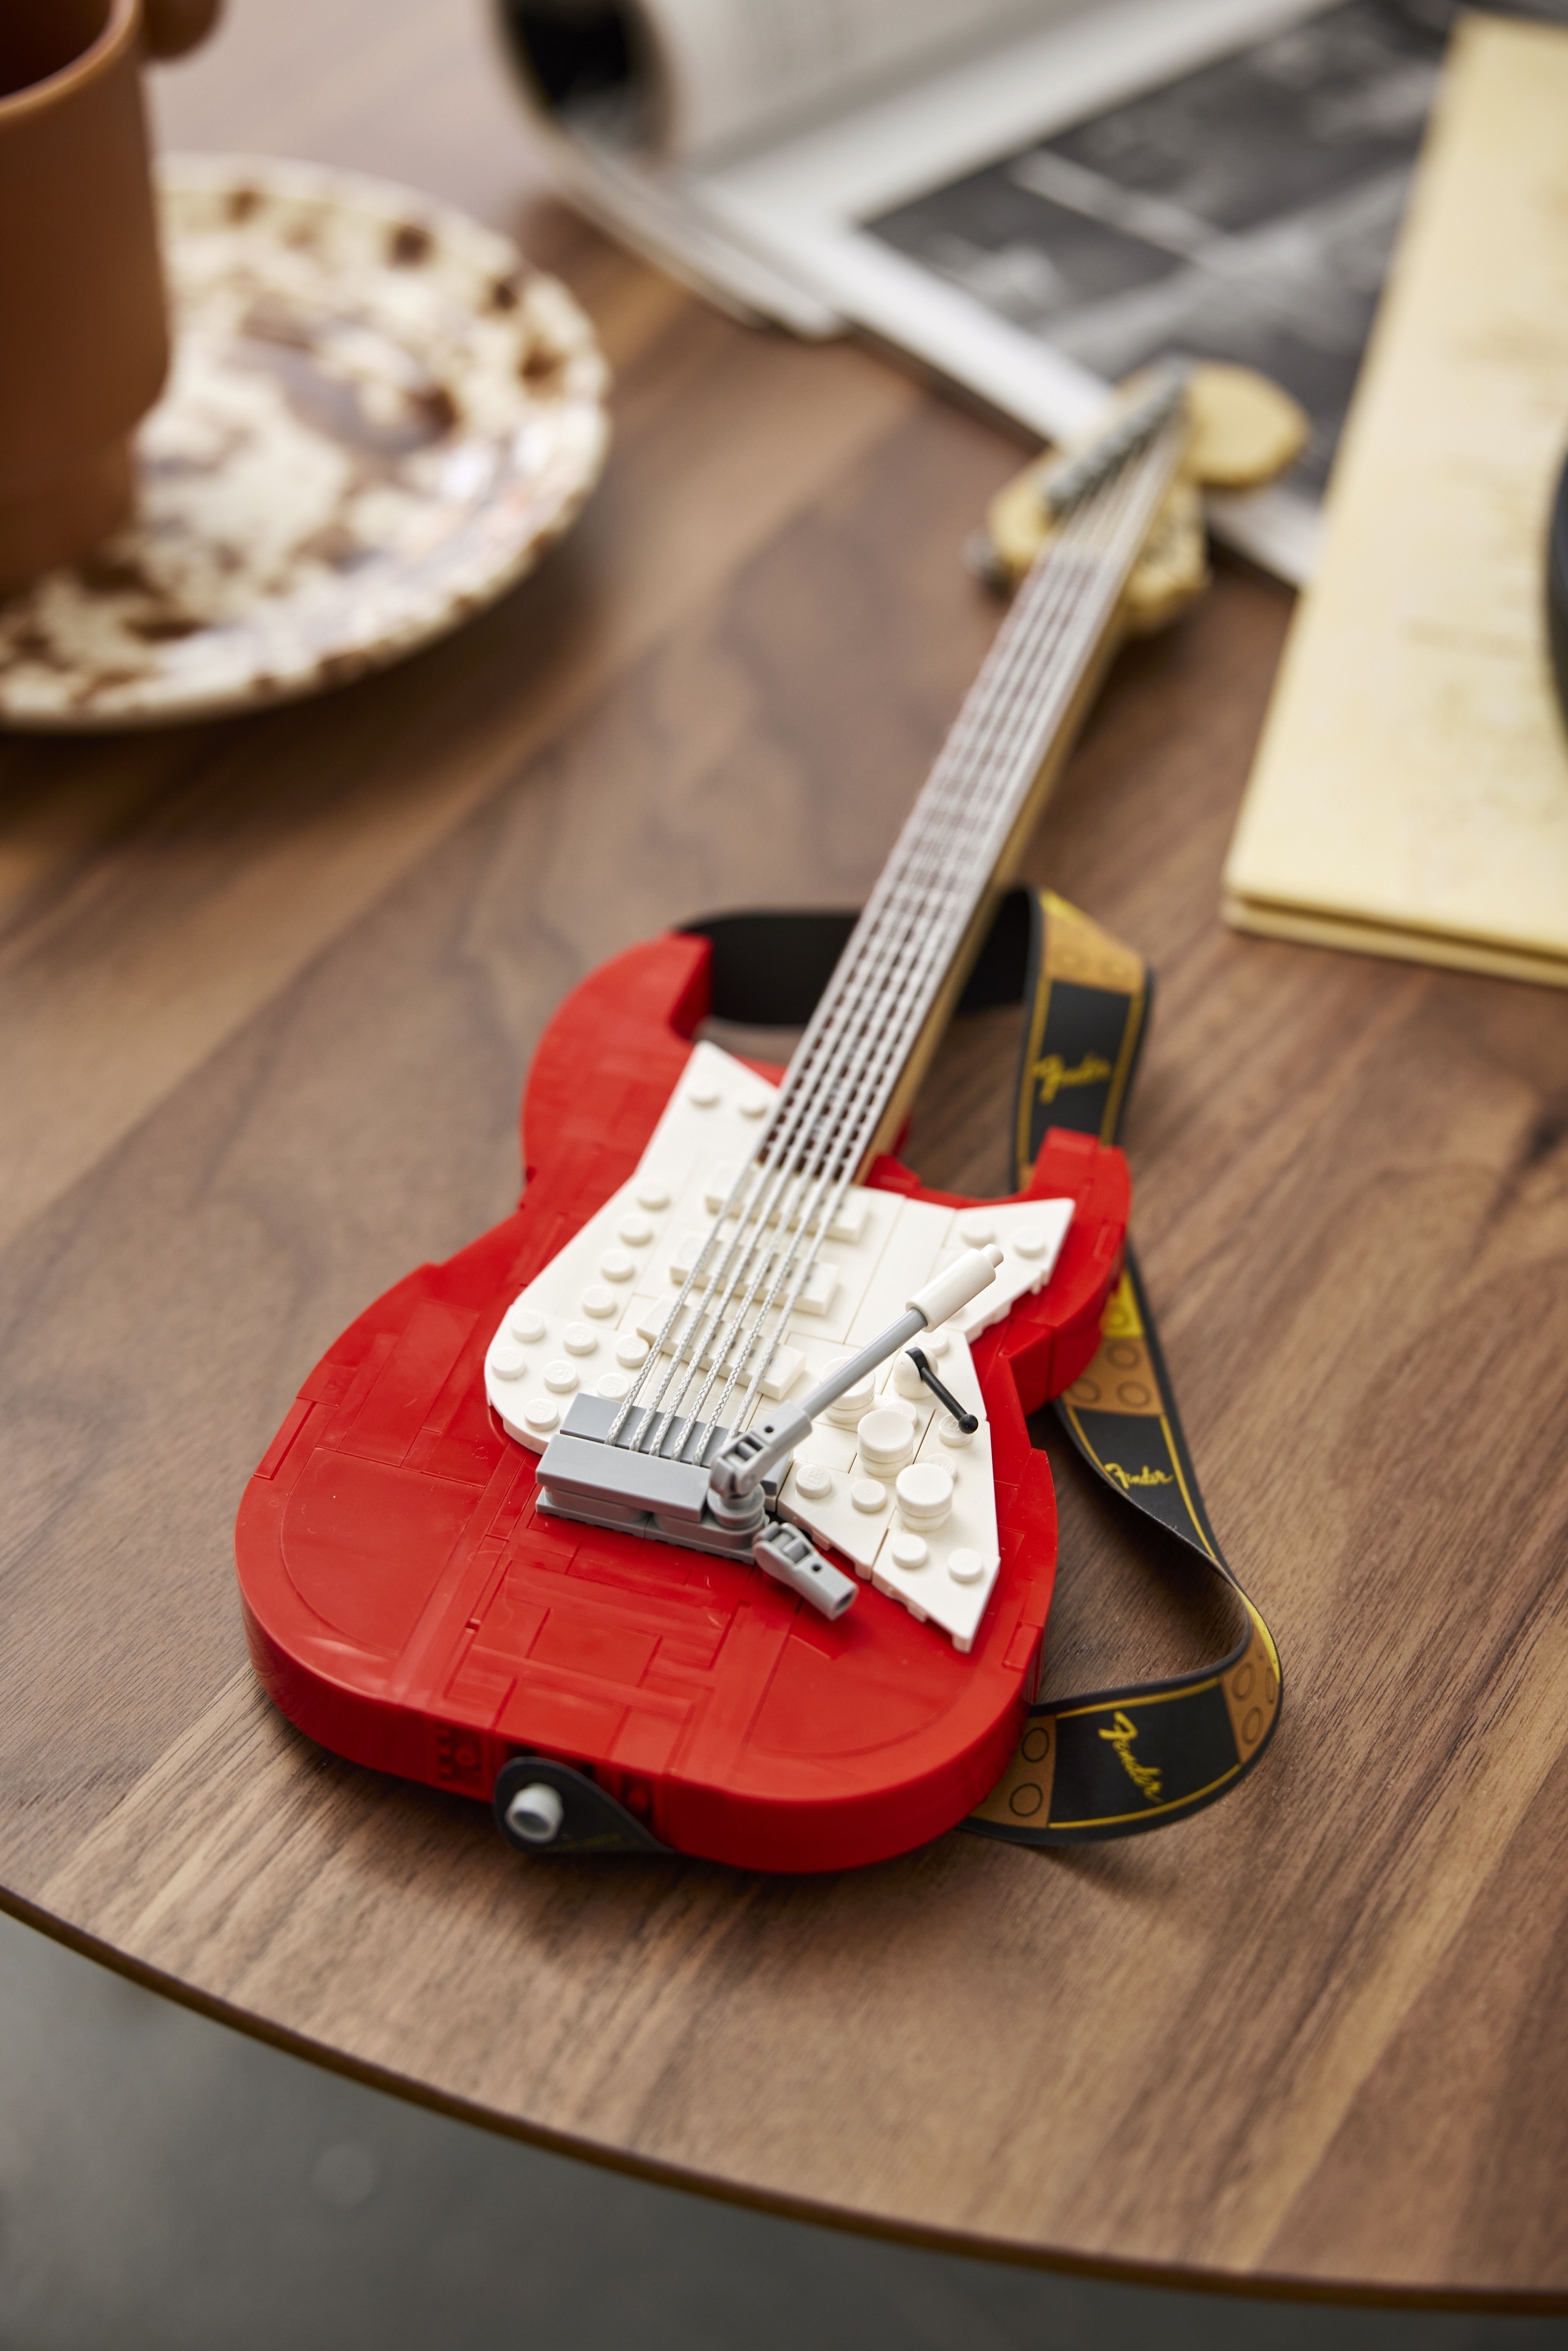 LEGO 21329 Fender Stratocaster offiziell vorgestellt: Ideas Gitarre in rot und schwarz baubar!